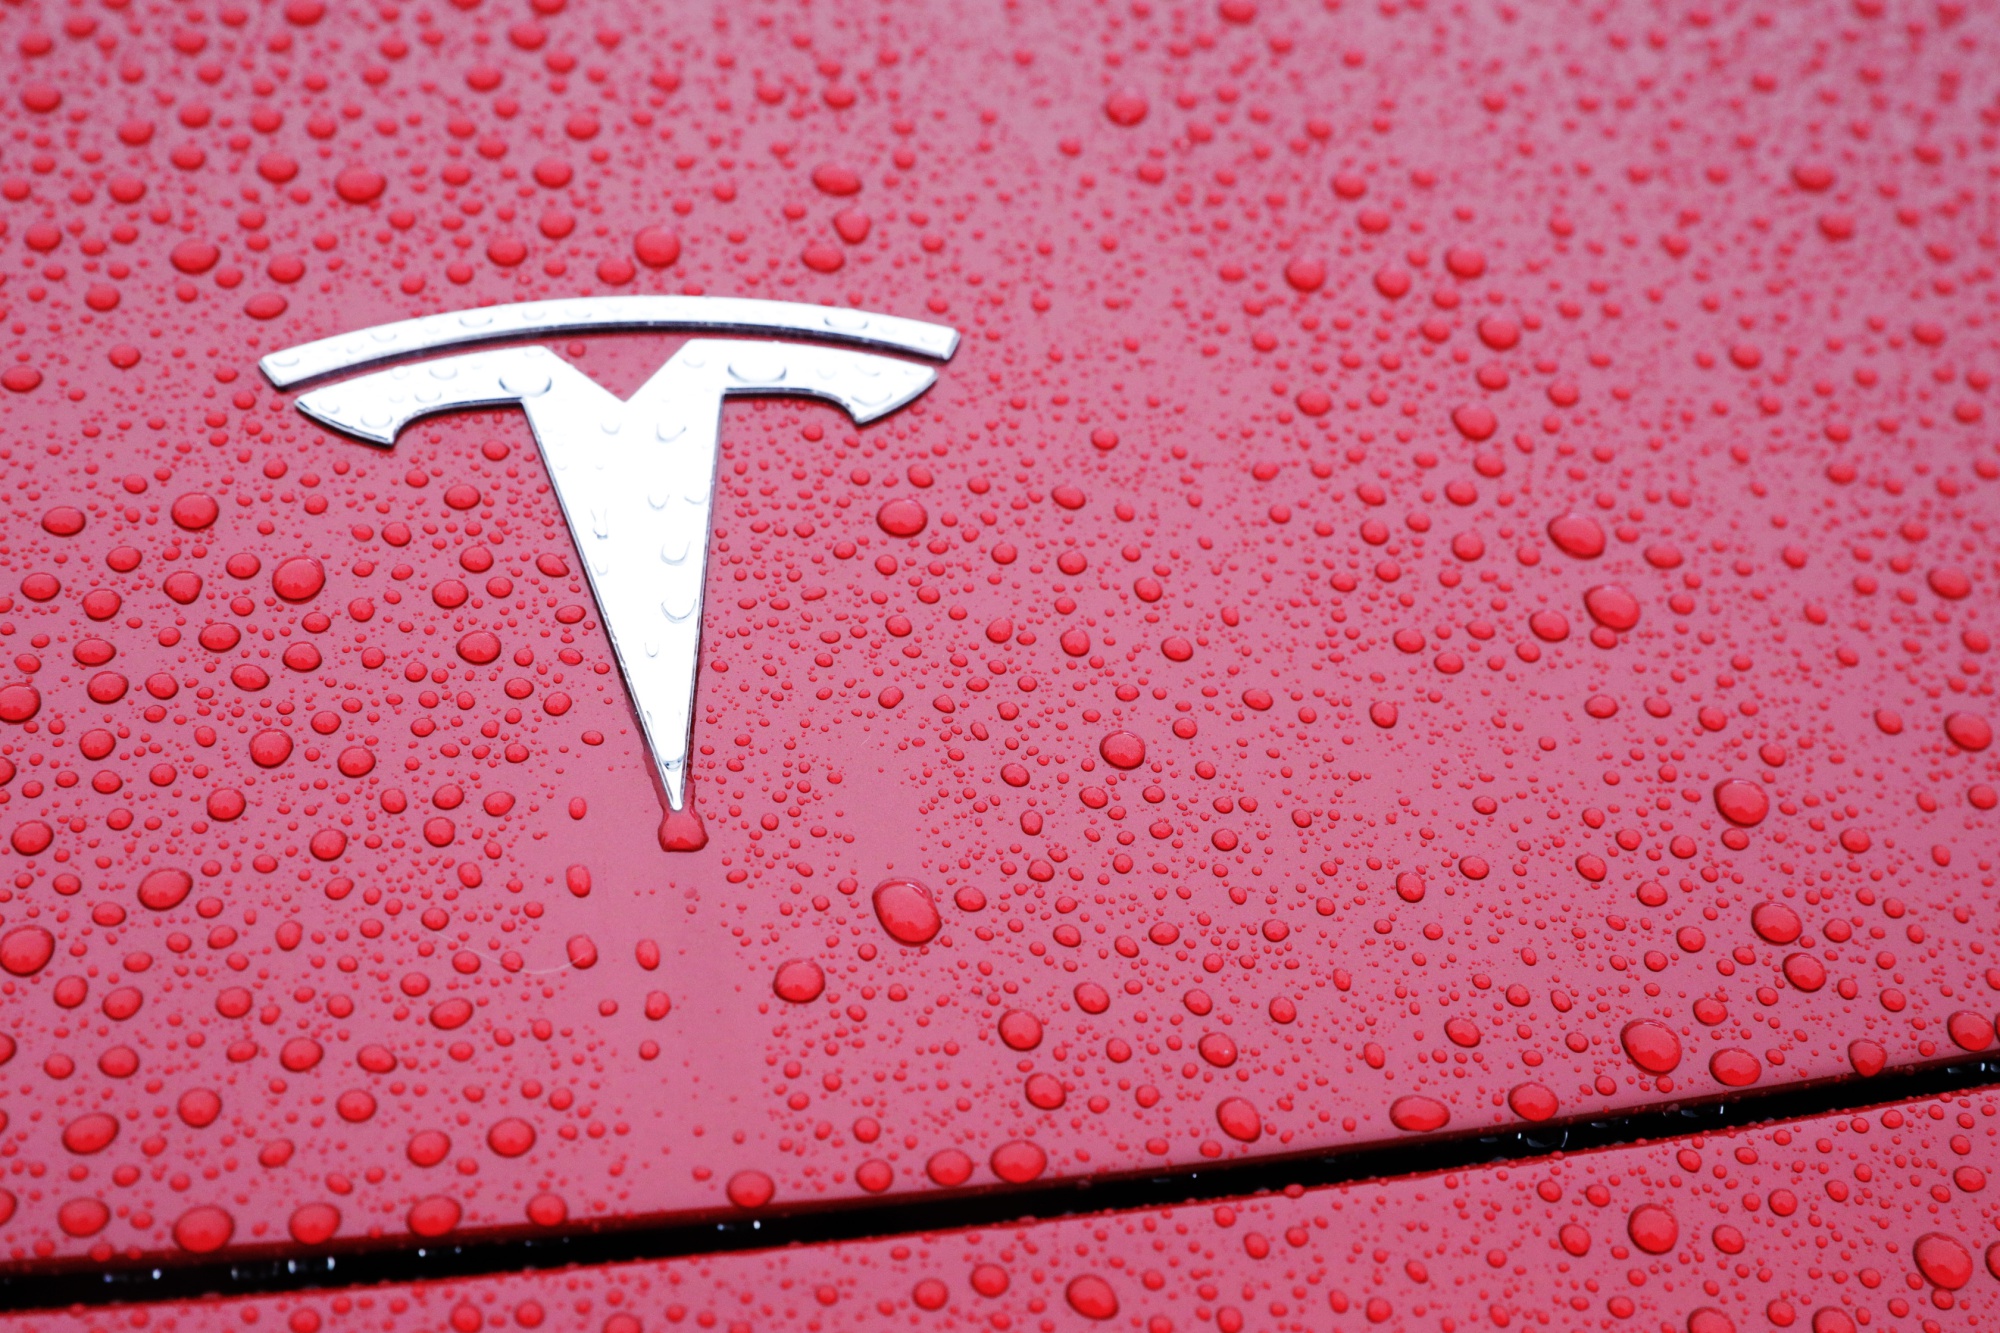 Tesla Crash in Florida Sparks Transport Safety Board Probe - Bloomberg